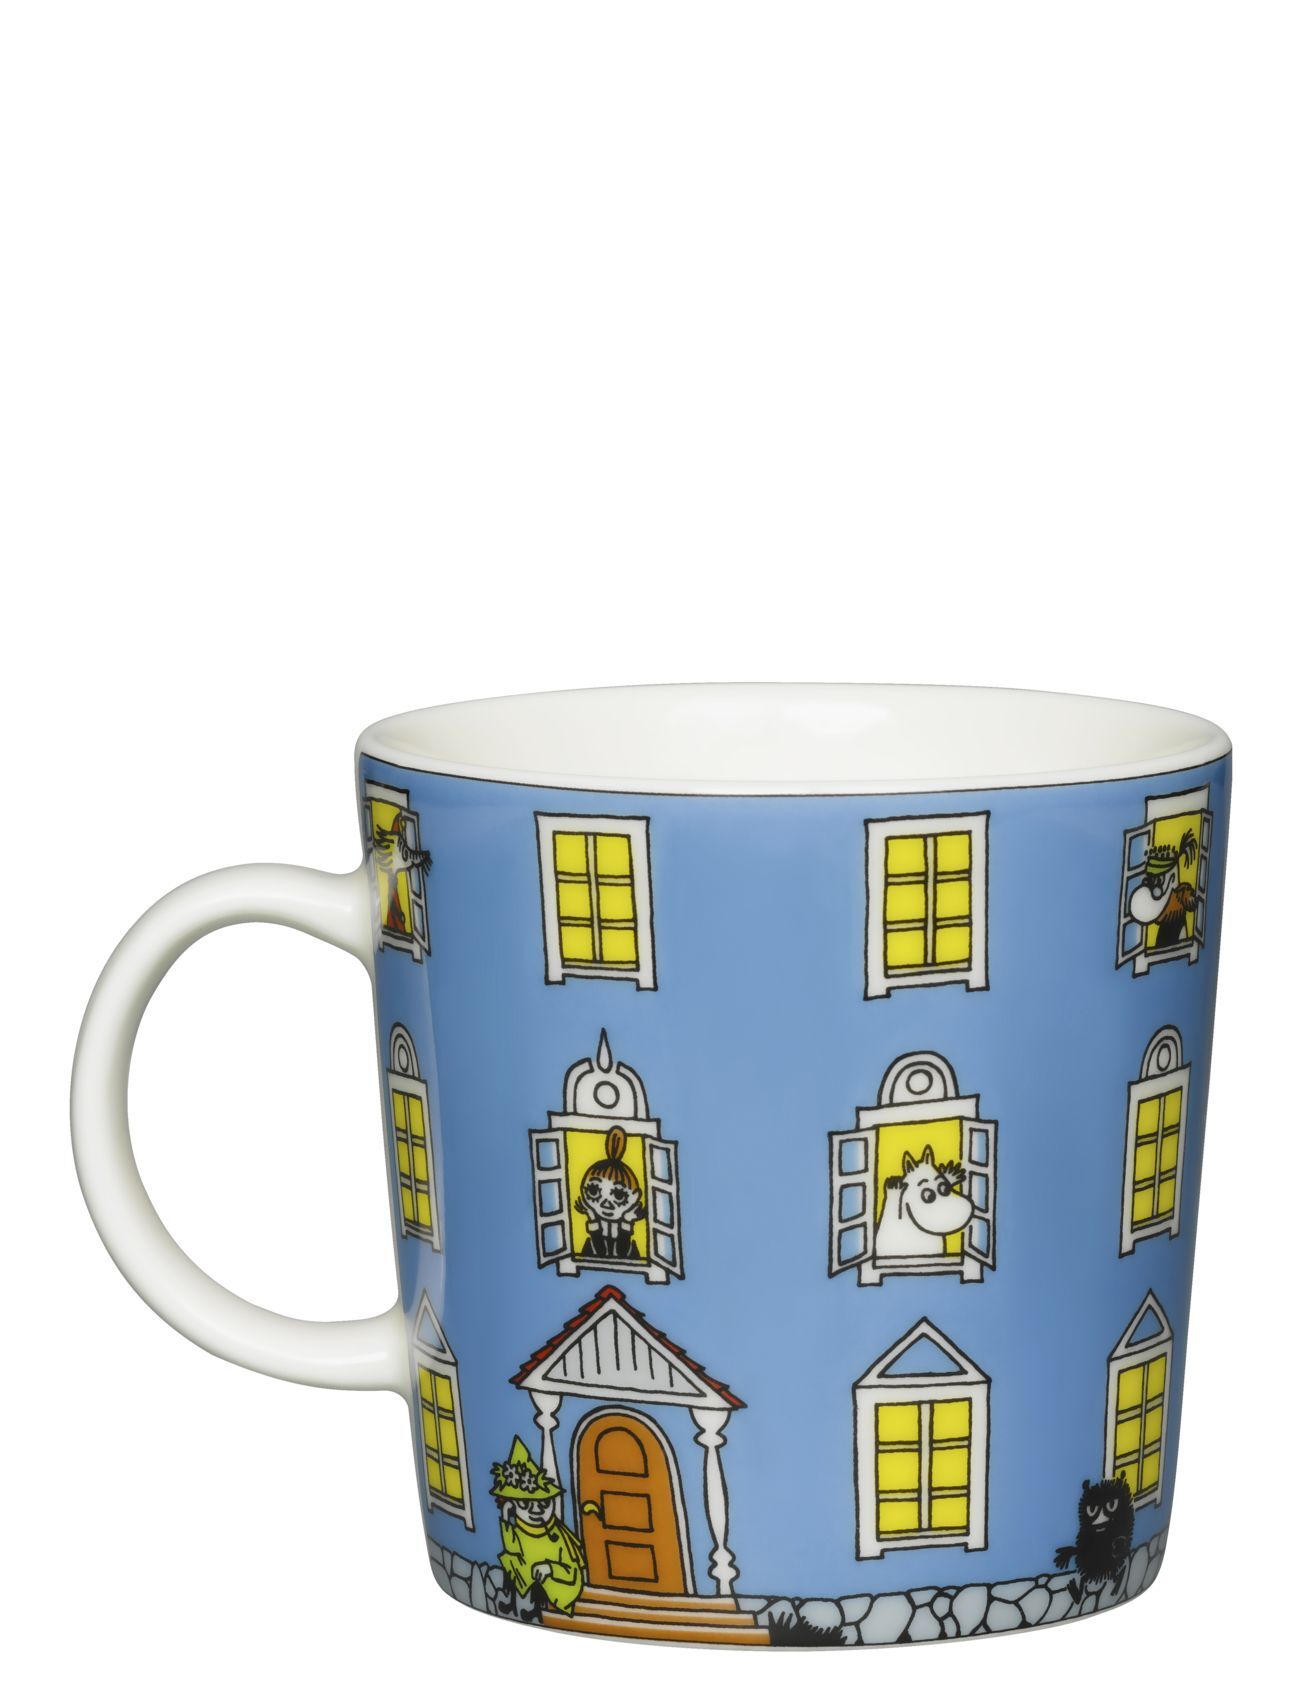 Arabia Moomin Mug 0,3L Moomin House Home Tableware Cups & Mugs Coffee Cups Blå Arabia